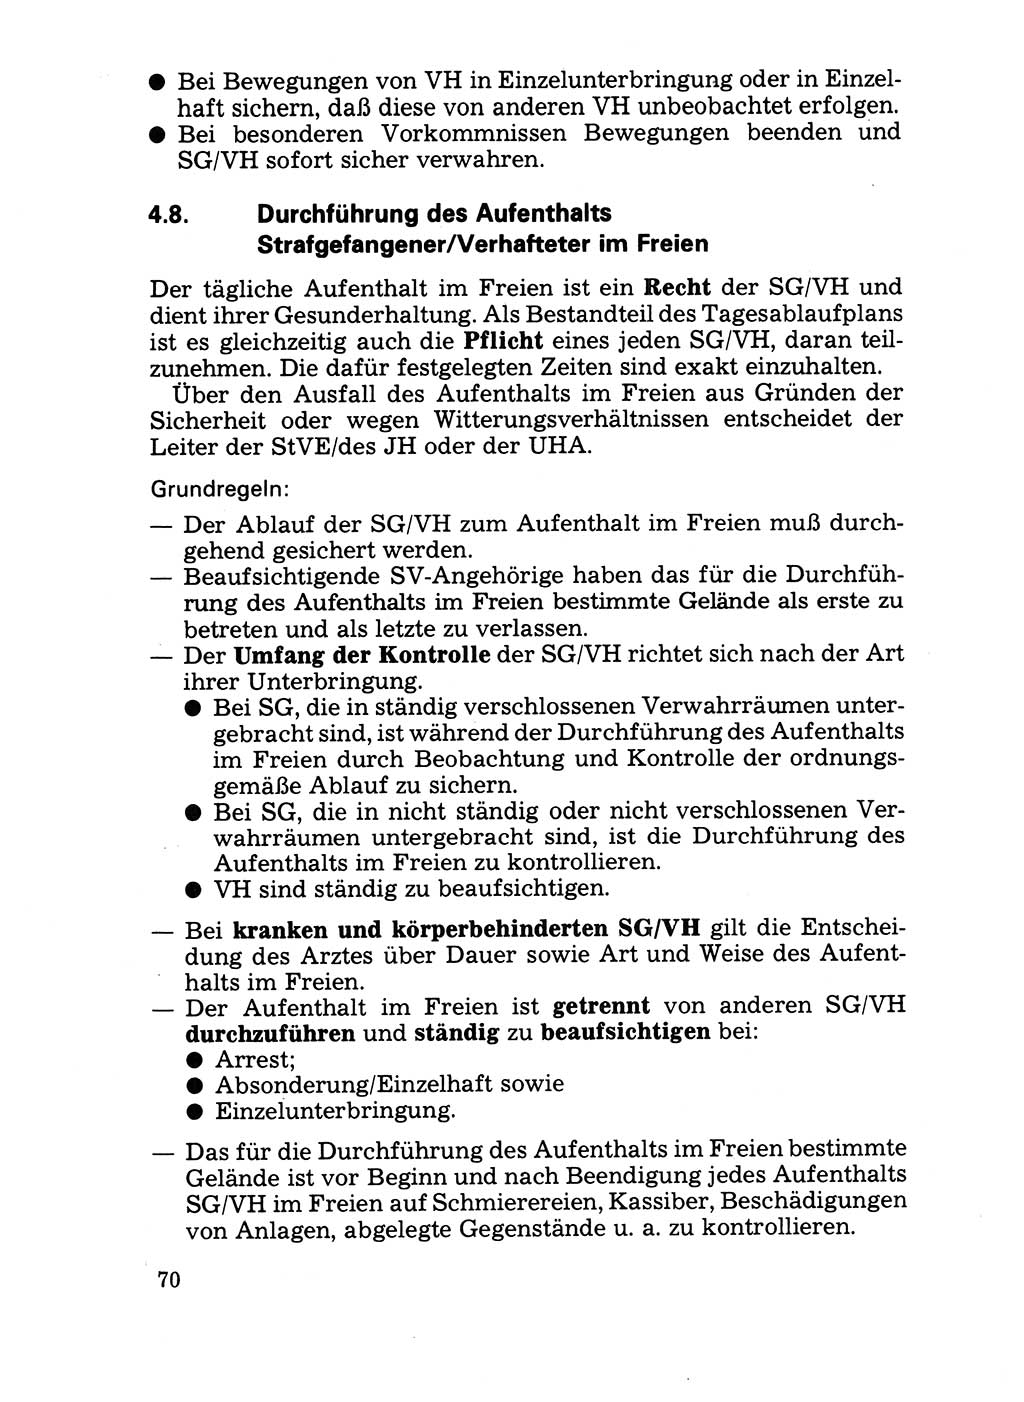 Handbuch für operative Dienste, Abteilung Strafvollzug (SV) [Ministerium des Innern (MdI) Deutsche Demokratische Republik (DDR)] 1981, Seite 70 (Hb. op. D. Abt. SV MdI DDR 1981, S. 70)